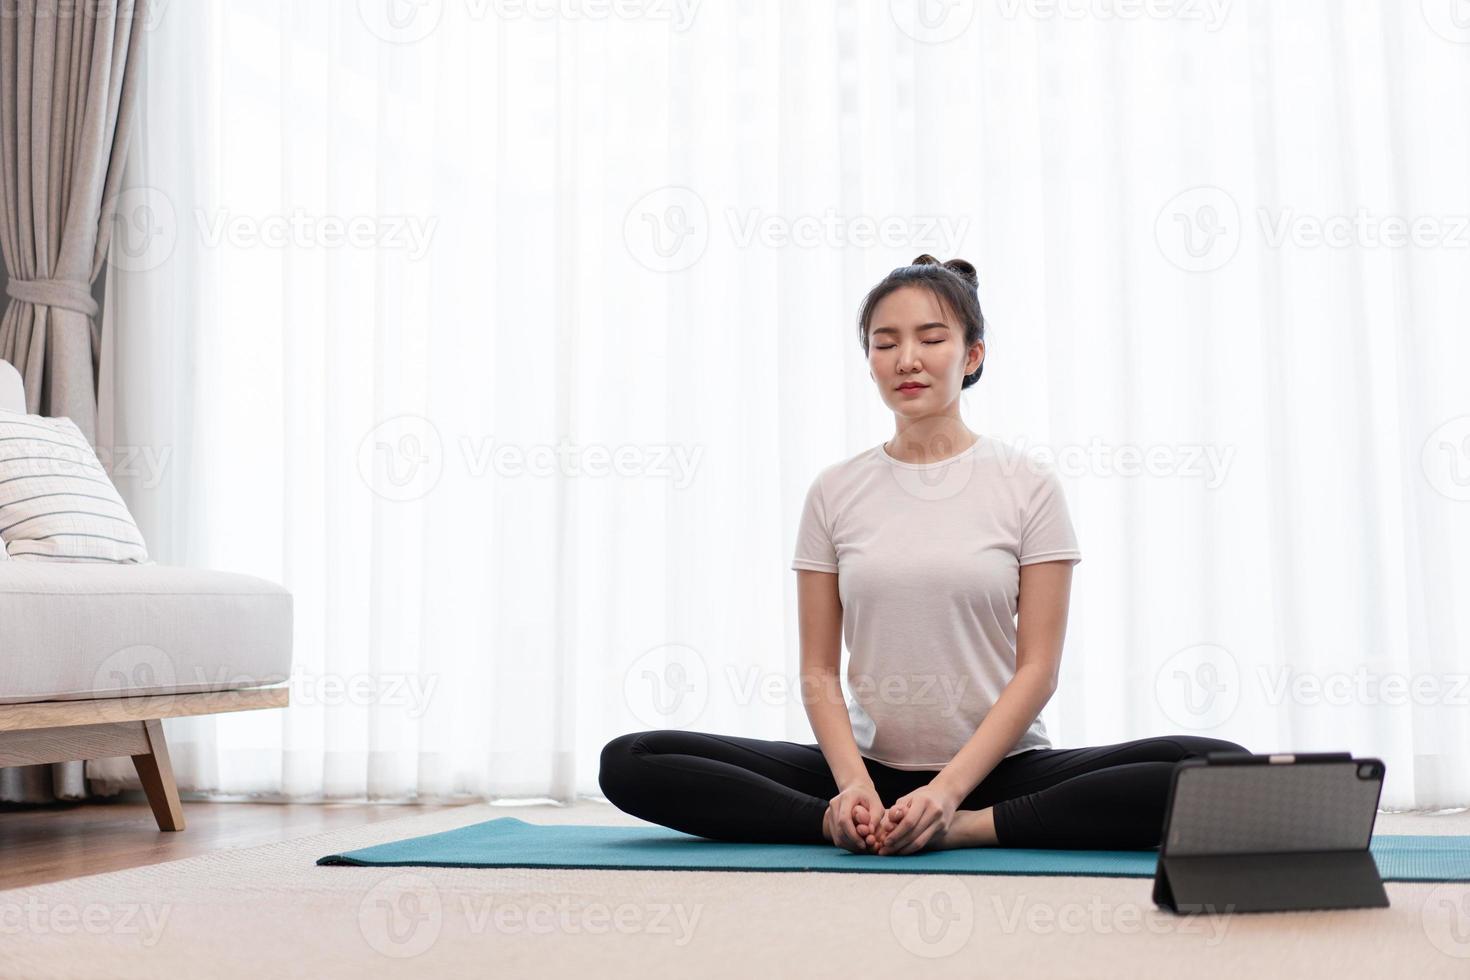 produktives aktivitätskonzept ein ruhiges mädchen, das sich darauf konzentriert, allein in friedlicher atmosphäre im wohnzimmer zu meditieren foto